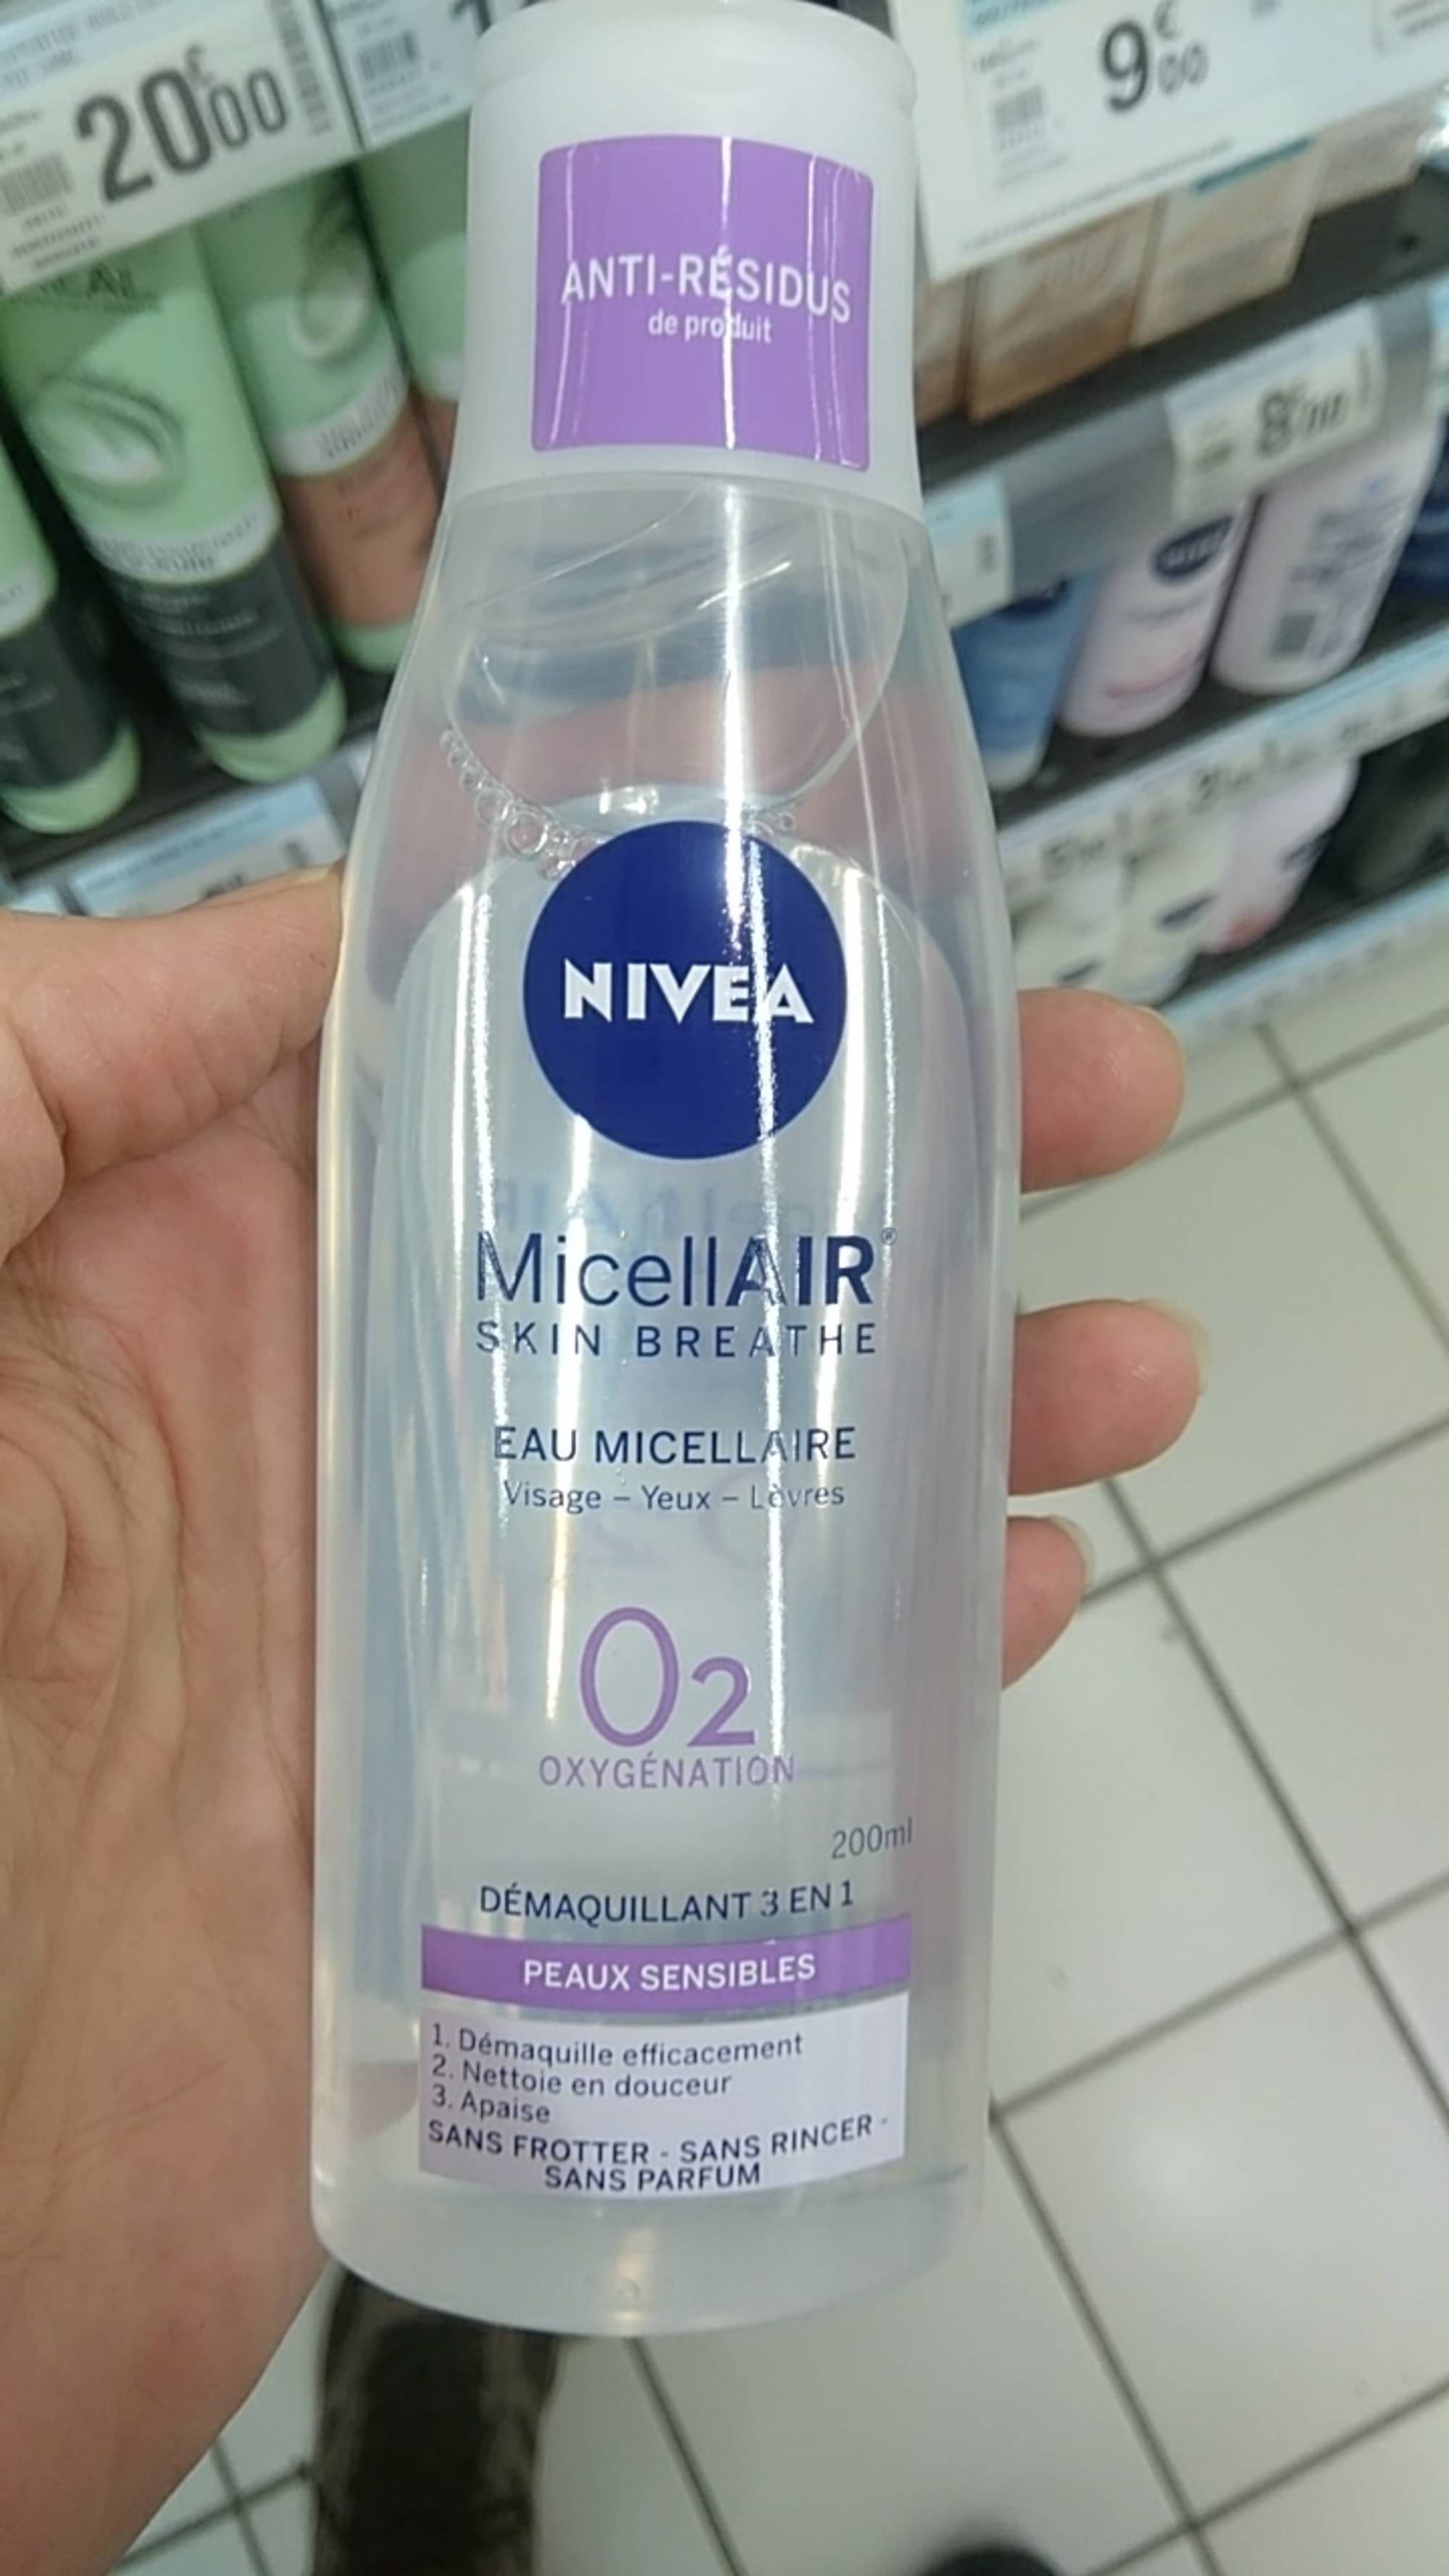 NIVEA - Micellair - Eau micellaire 02 oxygénation